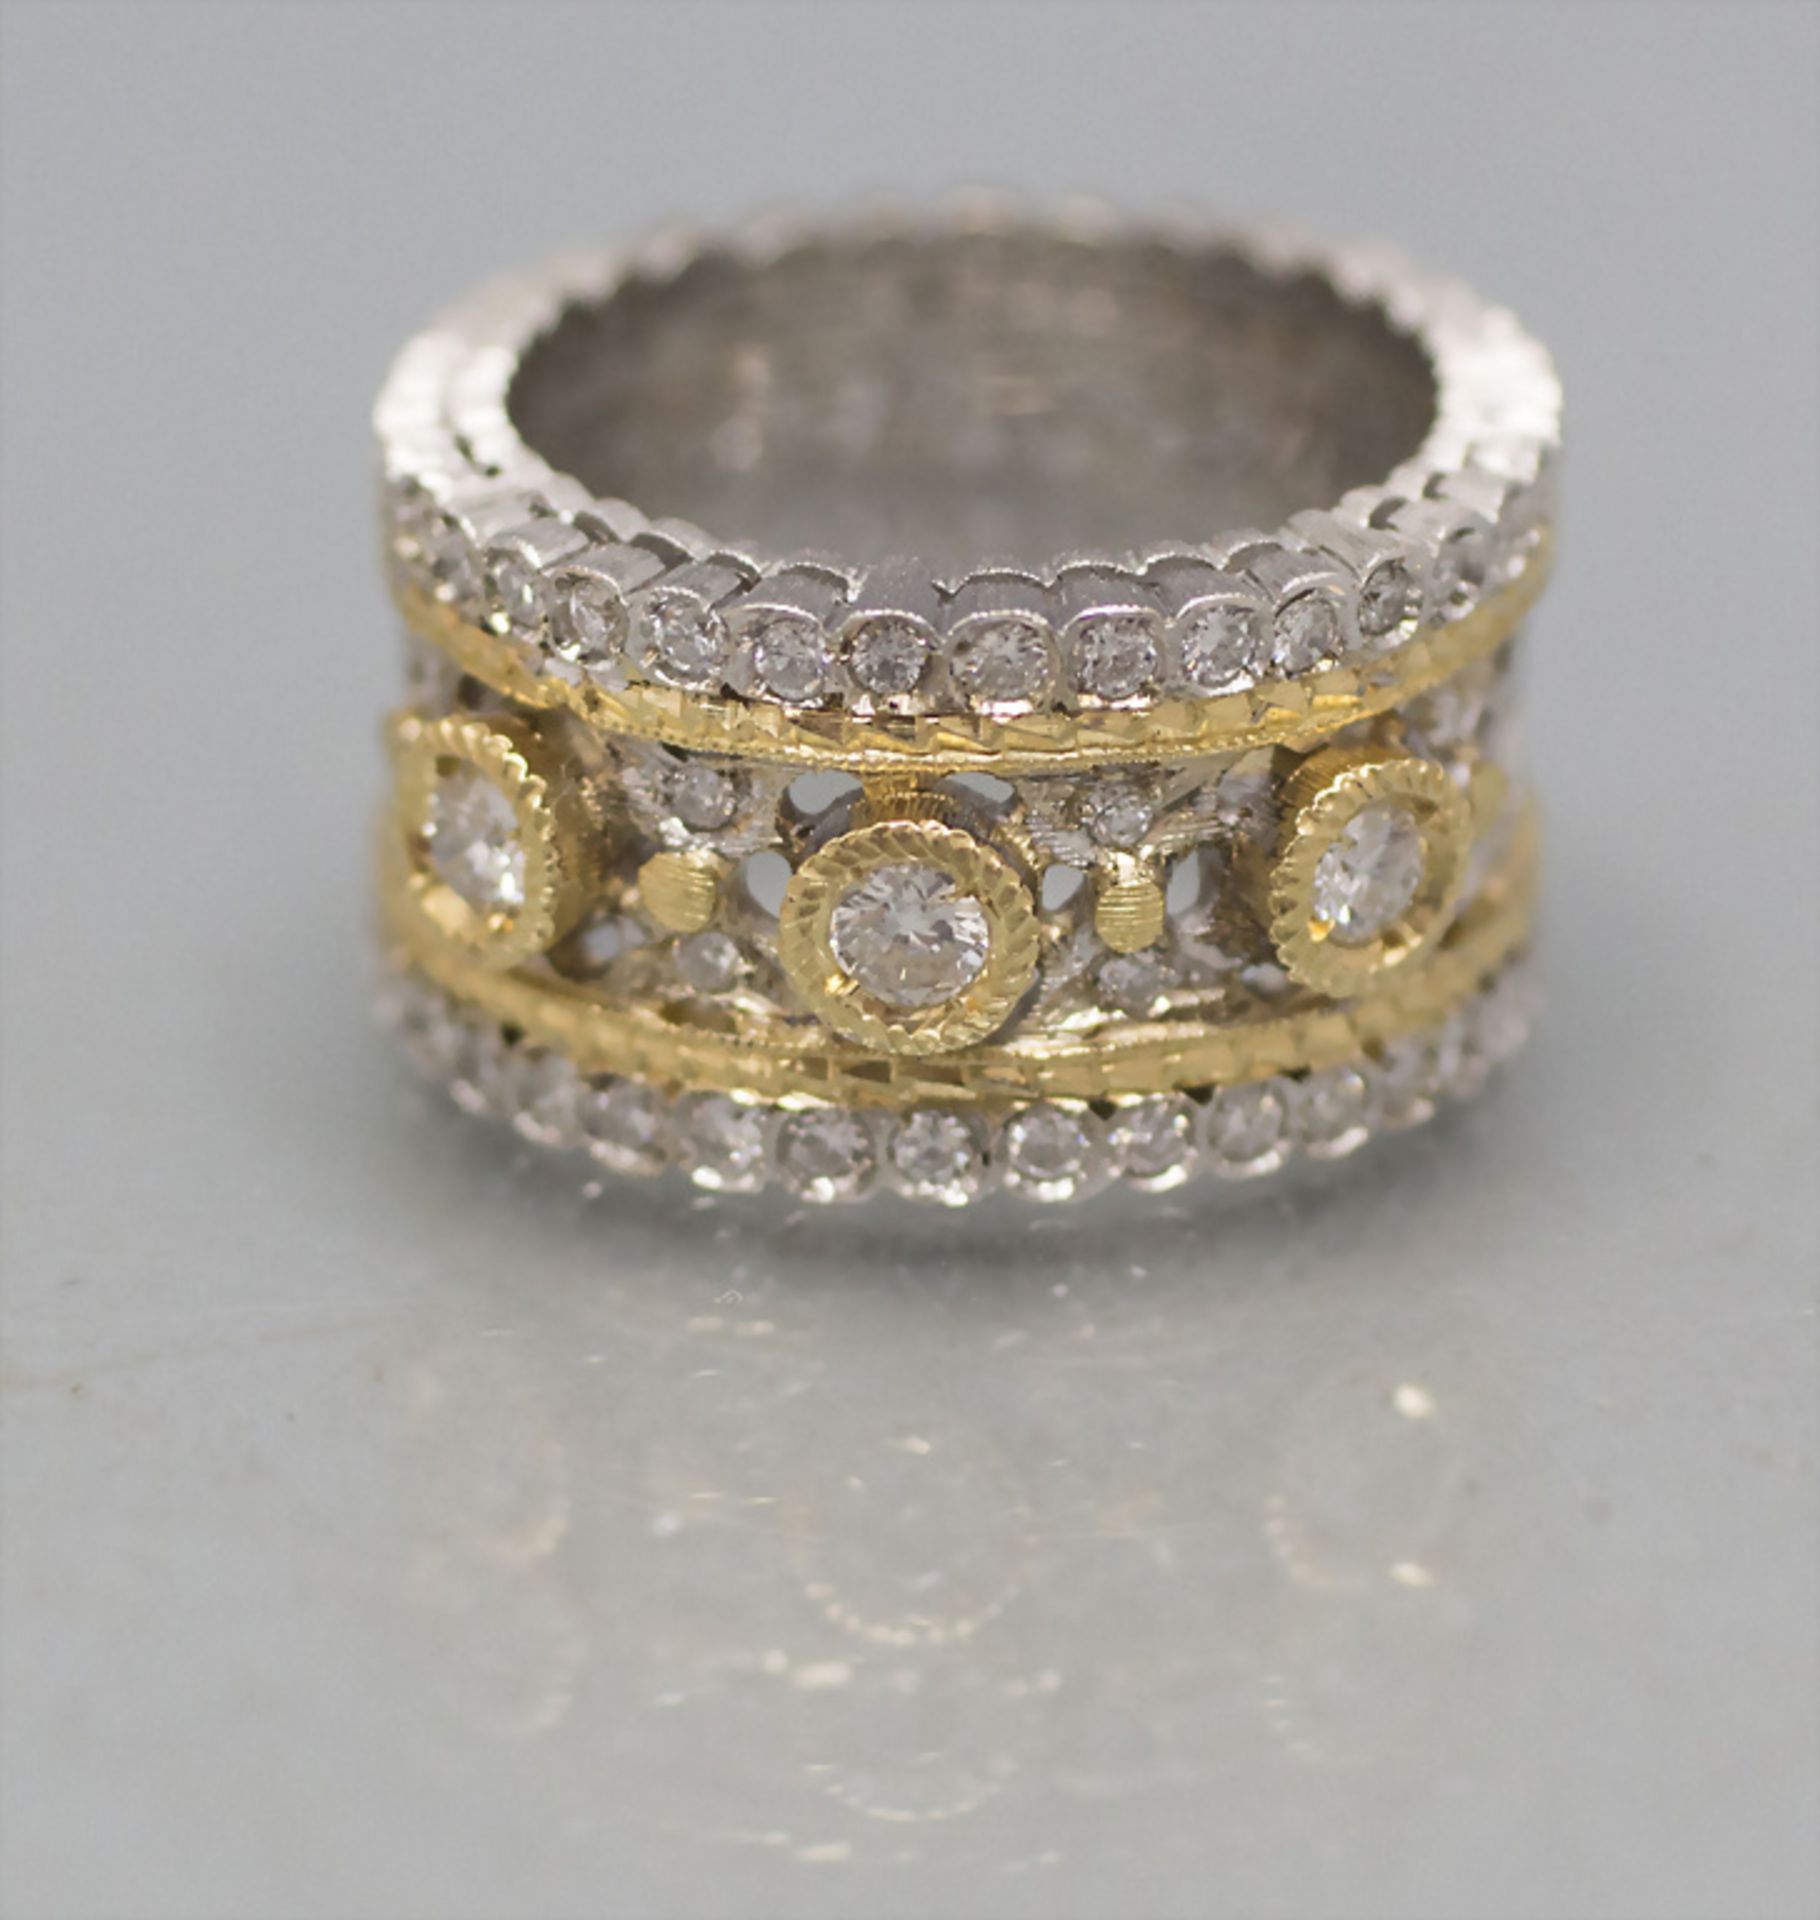 Damenring mit Brillanten / An 18 ct ladies gold ring with diamonds